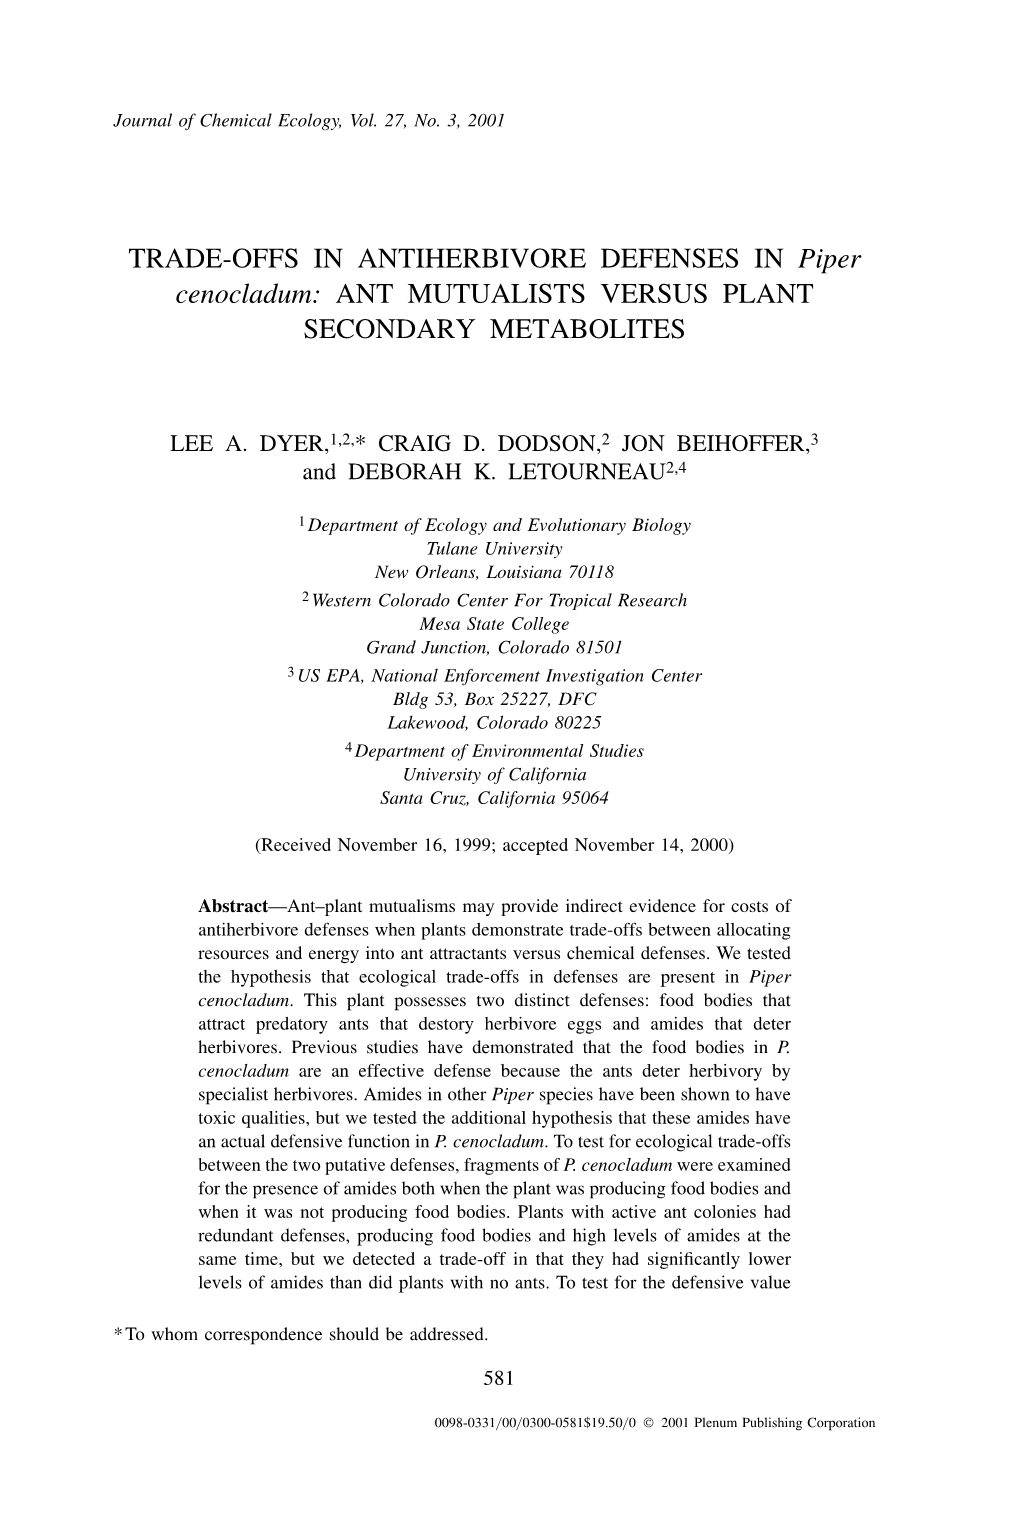 TRADE-OFFS in ANTIHERBIVORE DEFENSES in Piper Cenocladum: ANT MUTUALISTS VERSUS PLANT SECONDARY METABOLITES